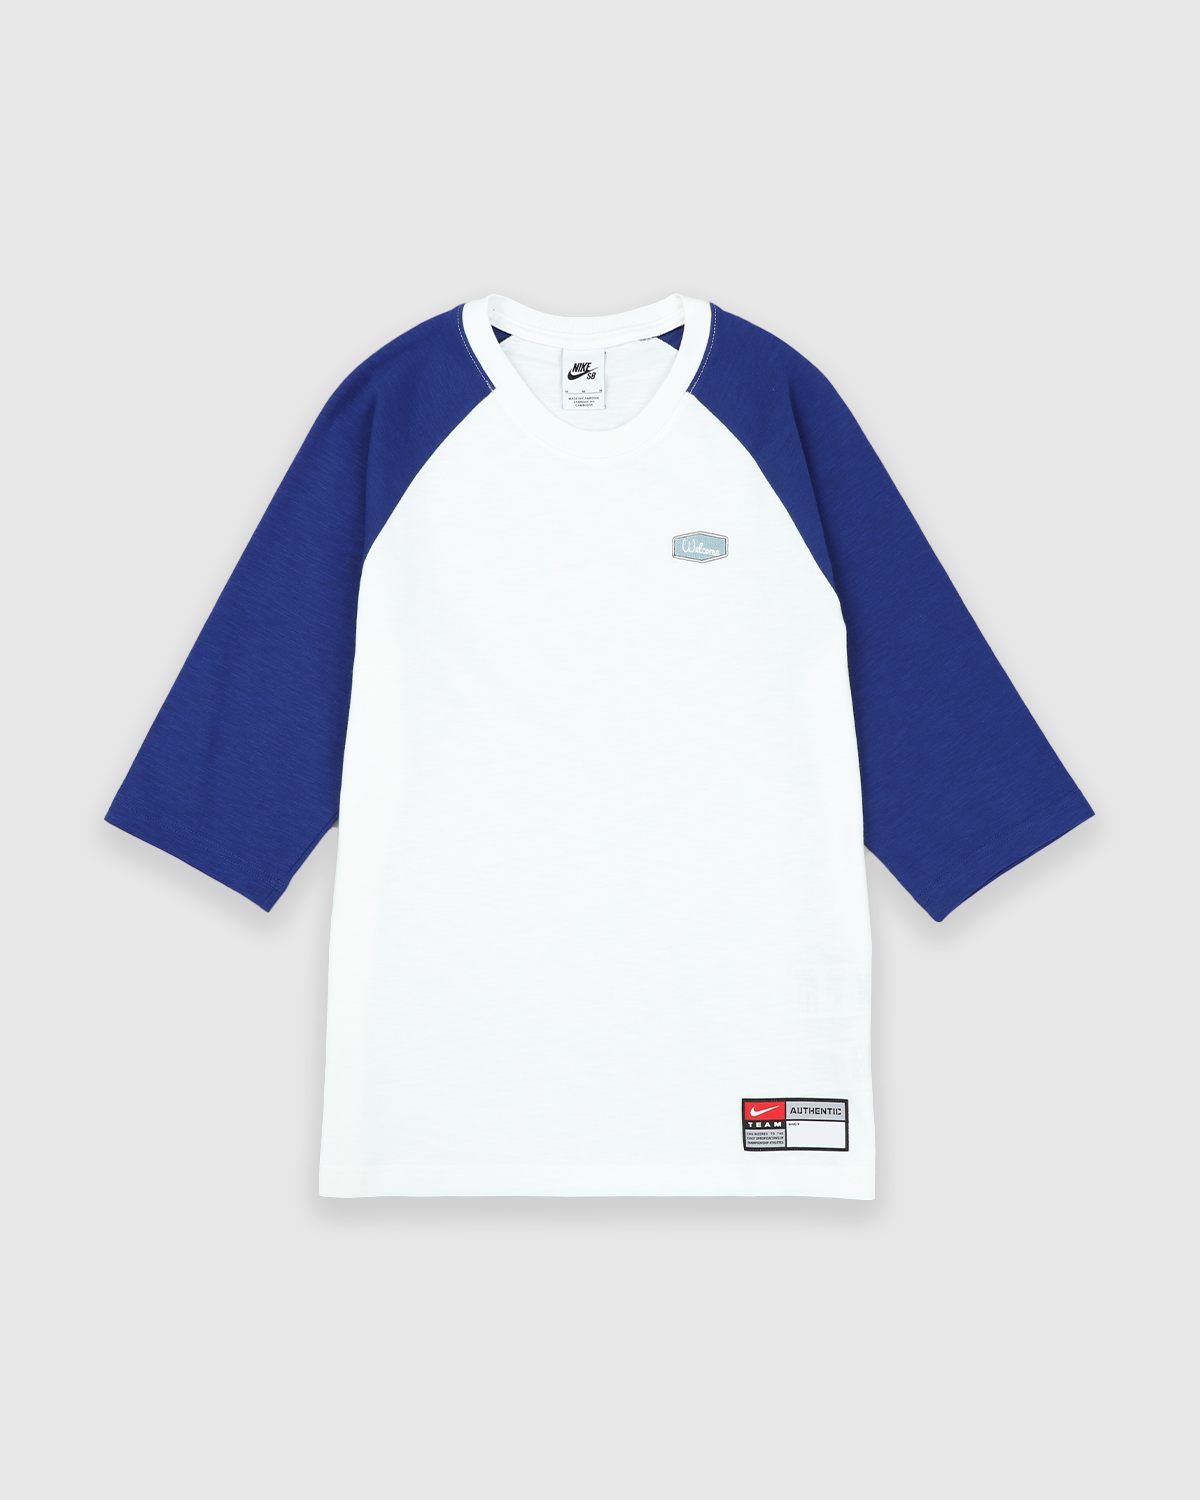 Nike SB X MLB Skate Baseball Jersey Deep Royal Blue/White for Men